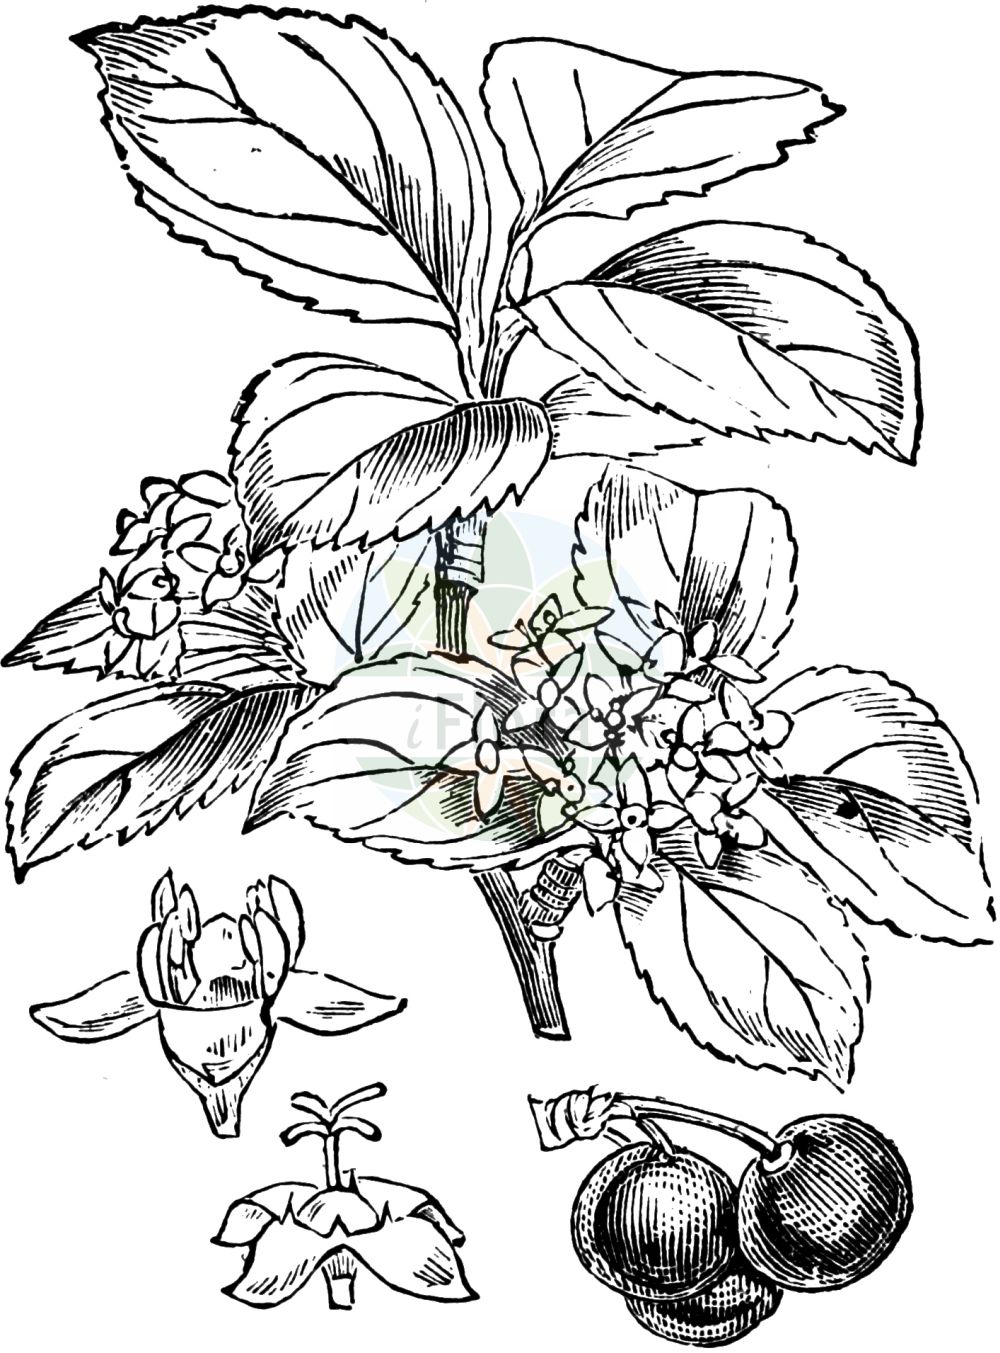 Historische Abbildung von Rhamnus cathartica (Purgier-Kreuzdorn - Buckthorn). Das Bild zeigt Blatt, Bluete, Frucht und Same. ---- Historical Drawing of Rhamnus cathartica (Purgier-Kreuzdorn - Buckthorn). The image is showing leaf, flower, fruit and seed.(Rhamnus cathartica,Purgier-Kreuzdorn,Buckthorn,Rhamnus cathartica,Rhamnus hydriensis,Purgier-Kreuzdorn,Buckthorn,Common Buckthorn,European Buckthorn,Purging Buckthorn,Rhamnus,Kreuzdorn,Buckthorn,Rhamnaceae,Kreuzdorngewächse,Buckthorn family,Blatt,Bluete,Frucht,Same,leaf,flower,fruit,seed,Fitch et al. (1880))